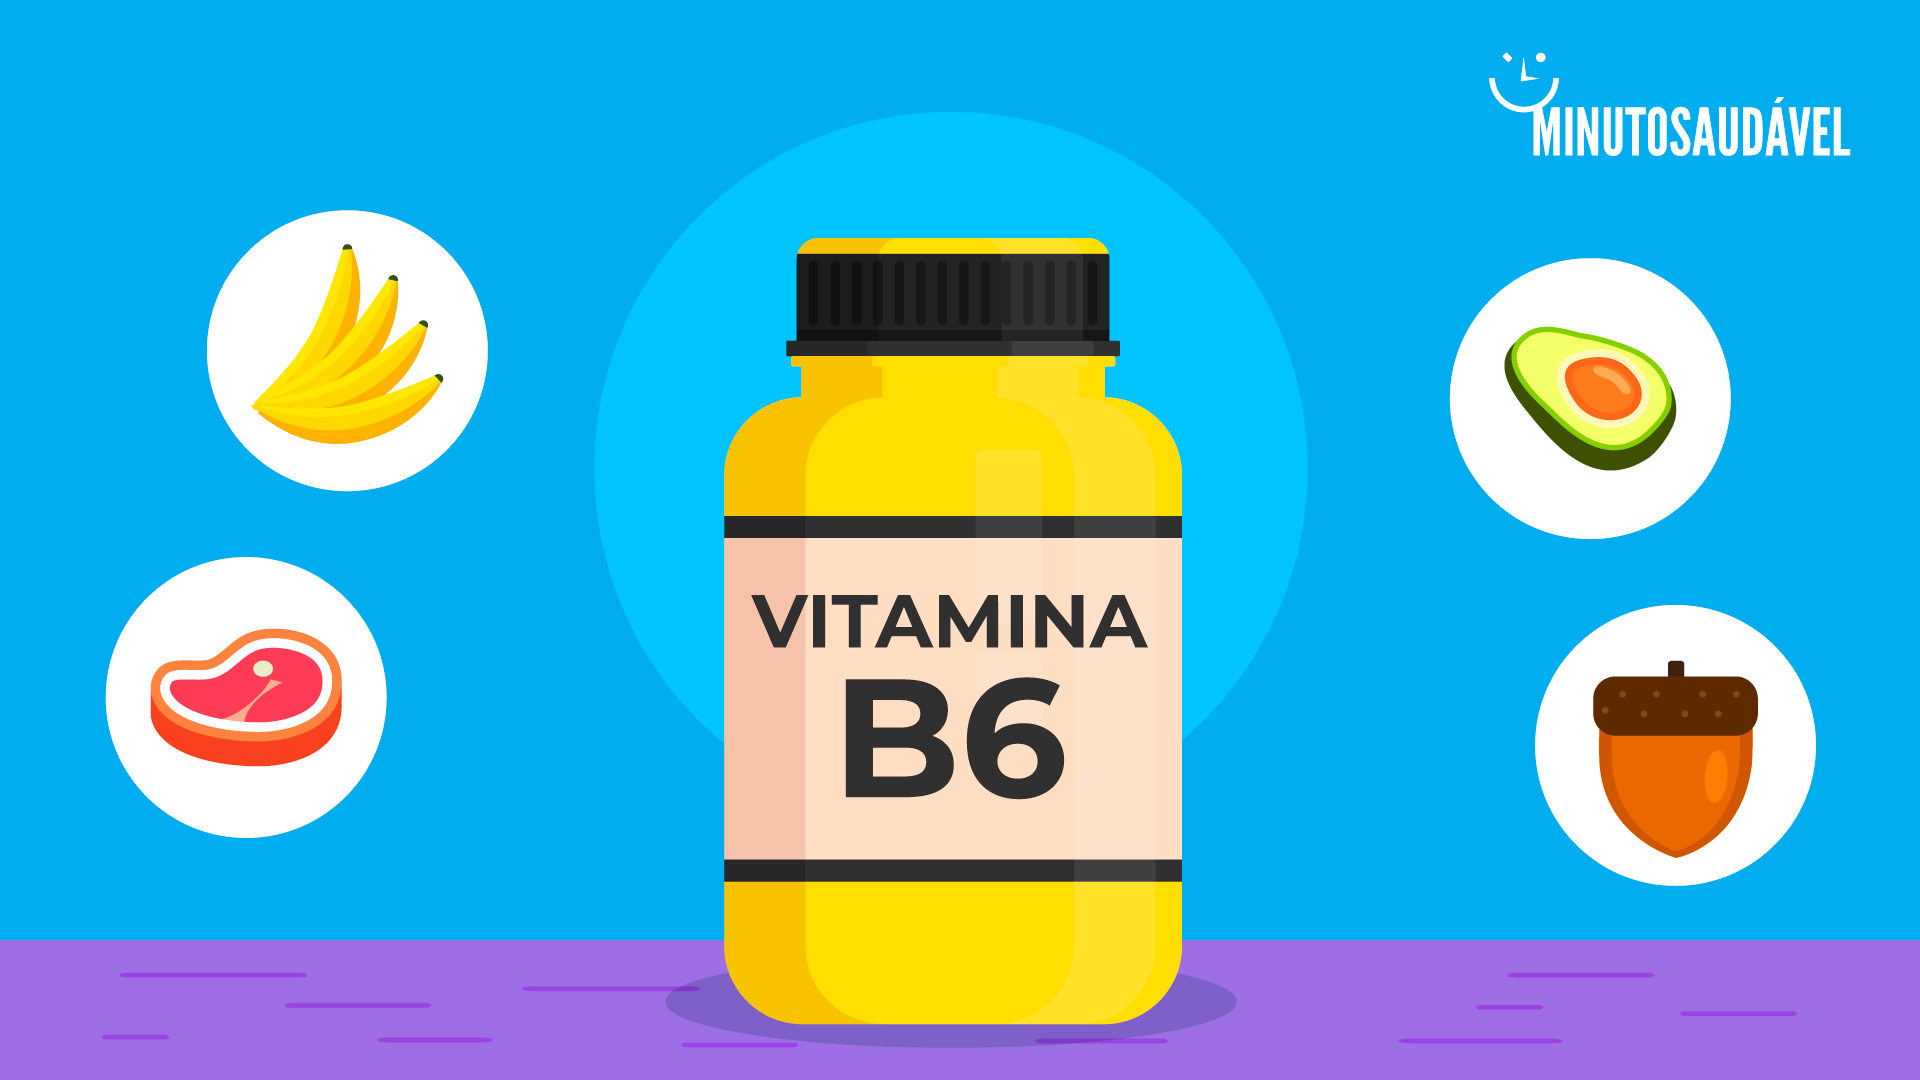 Foto de capa do artigo "Vitamina B6: para  que serve e em quais alimentos encontrar"